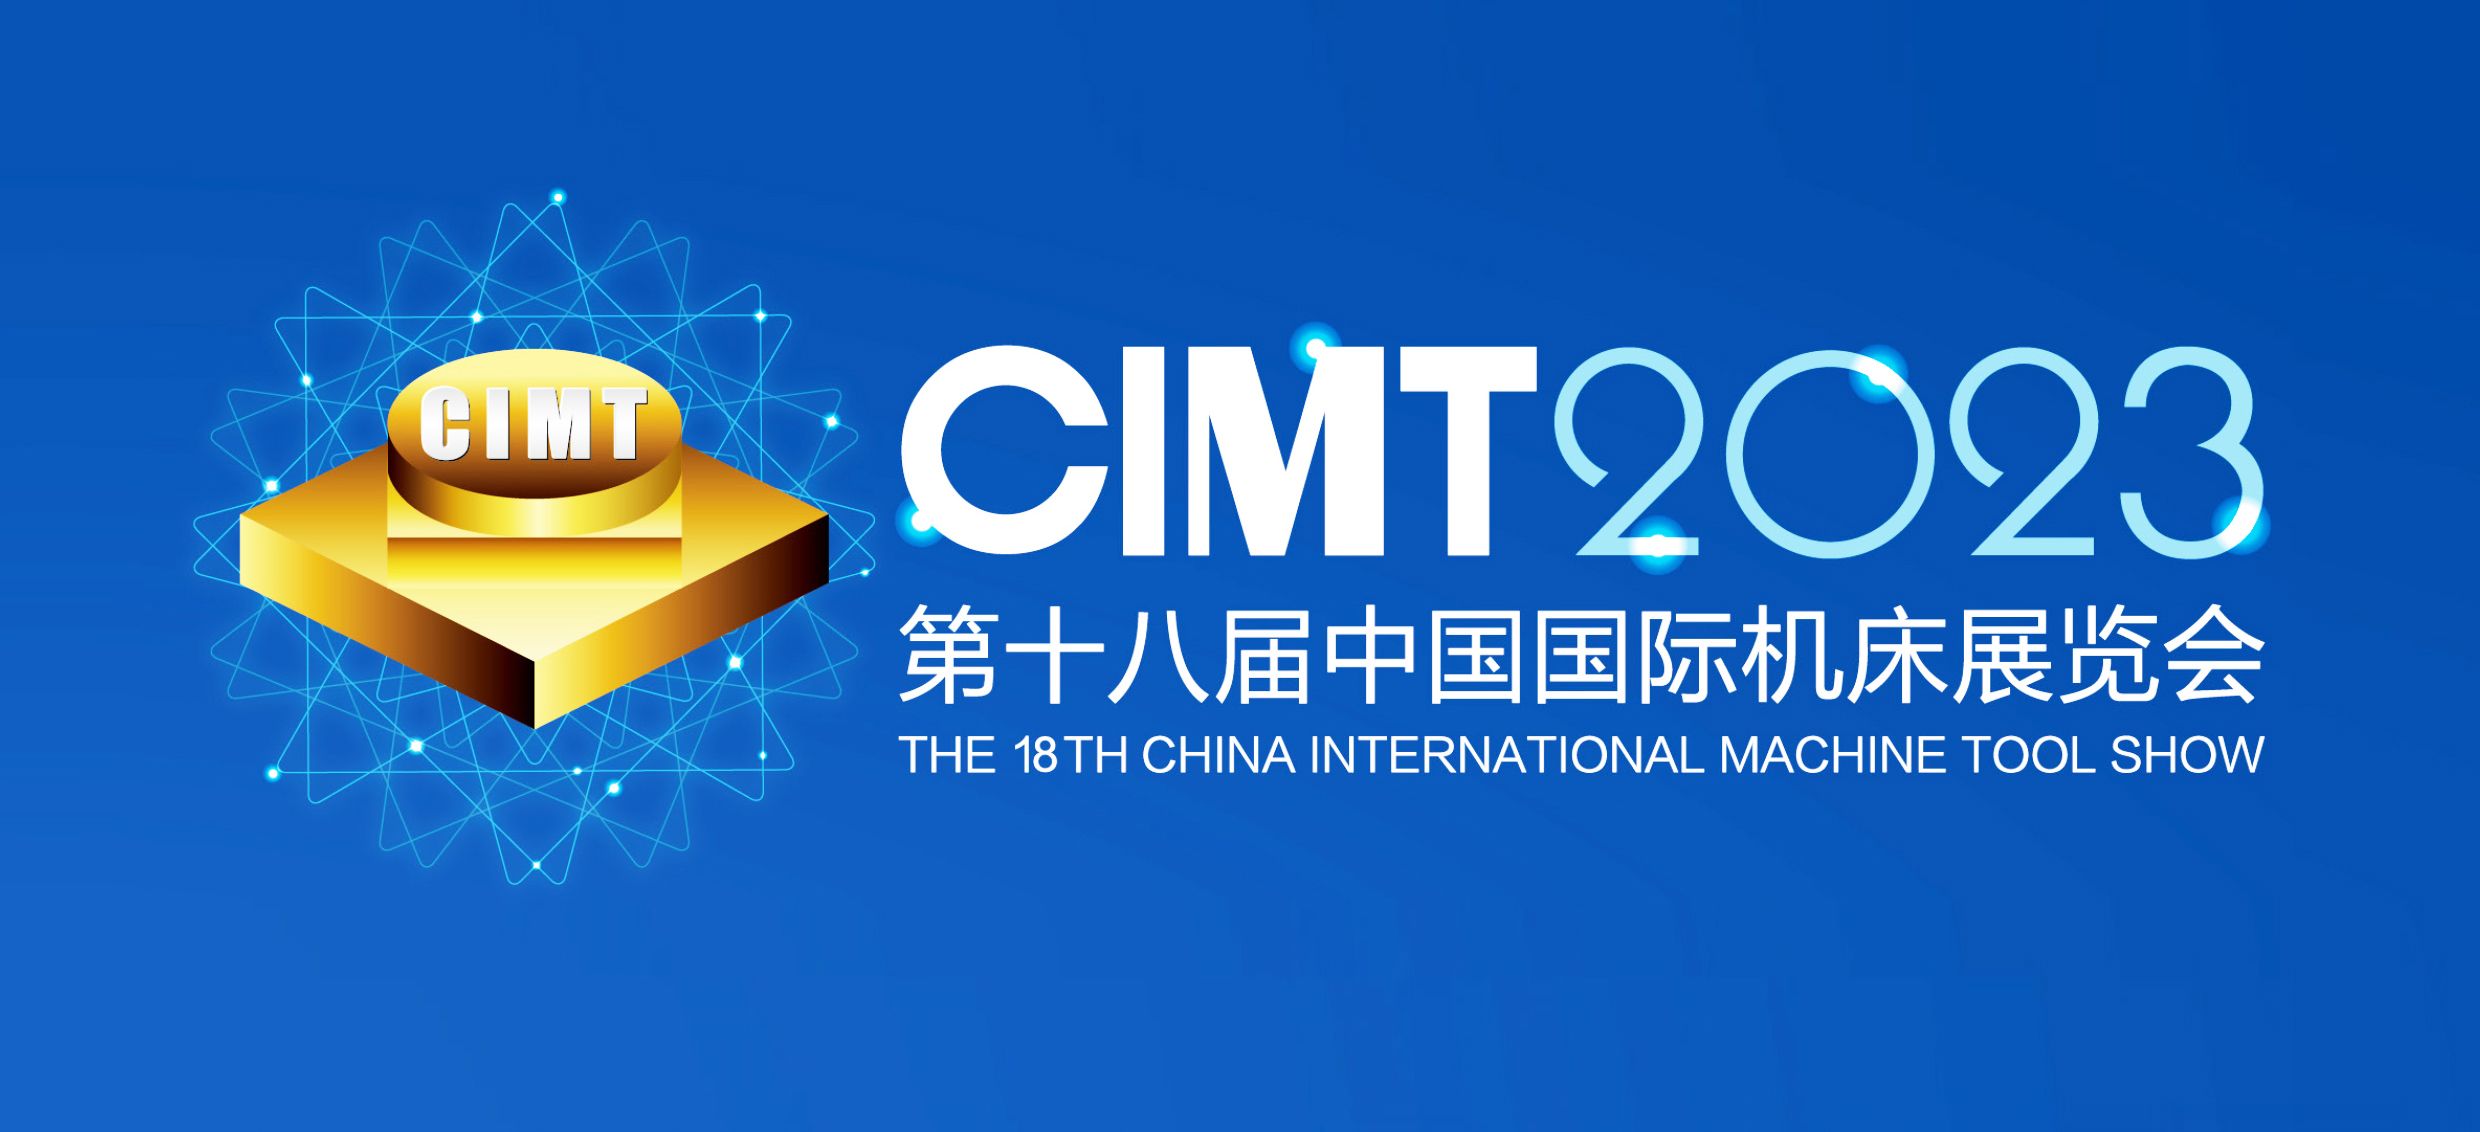 展會邀請|4月10-15第十八屆中國國際機床展覽會通錦精密與您相約北京！